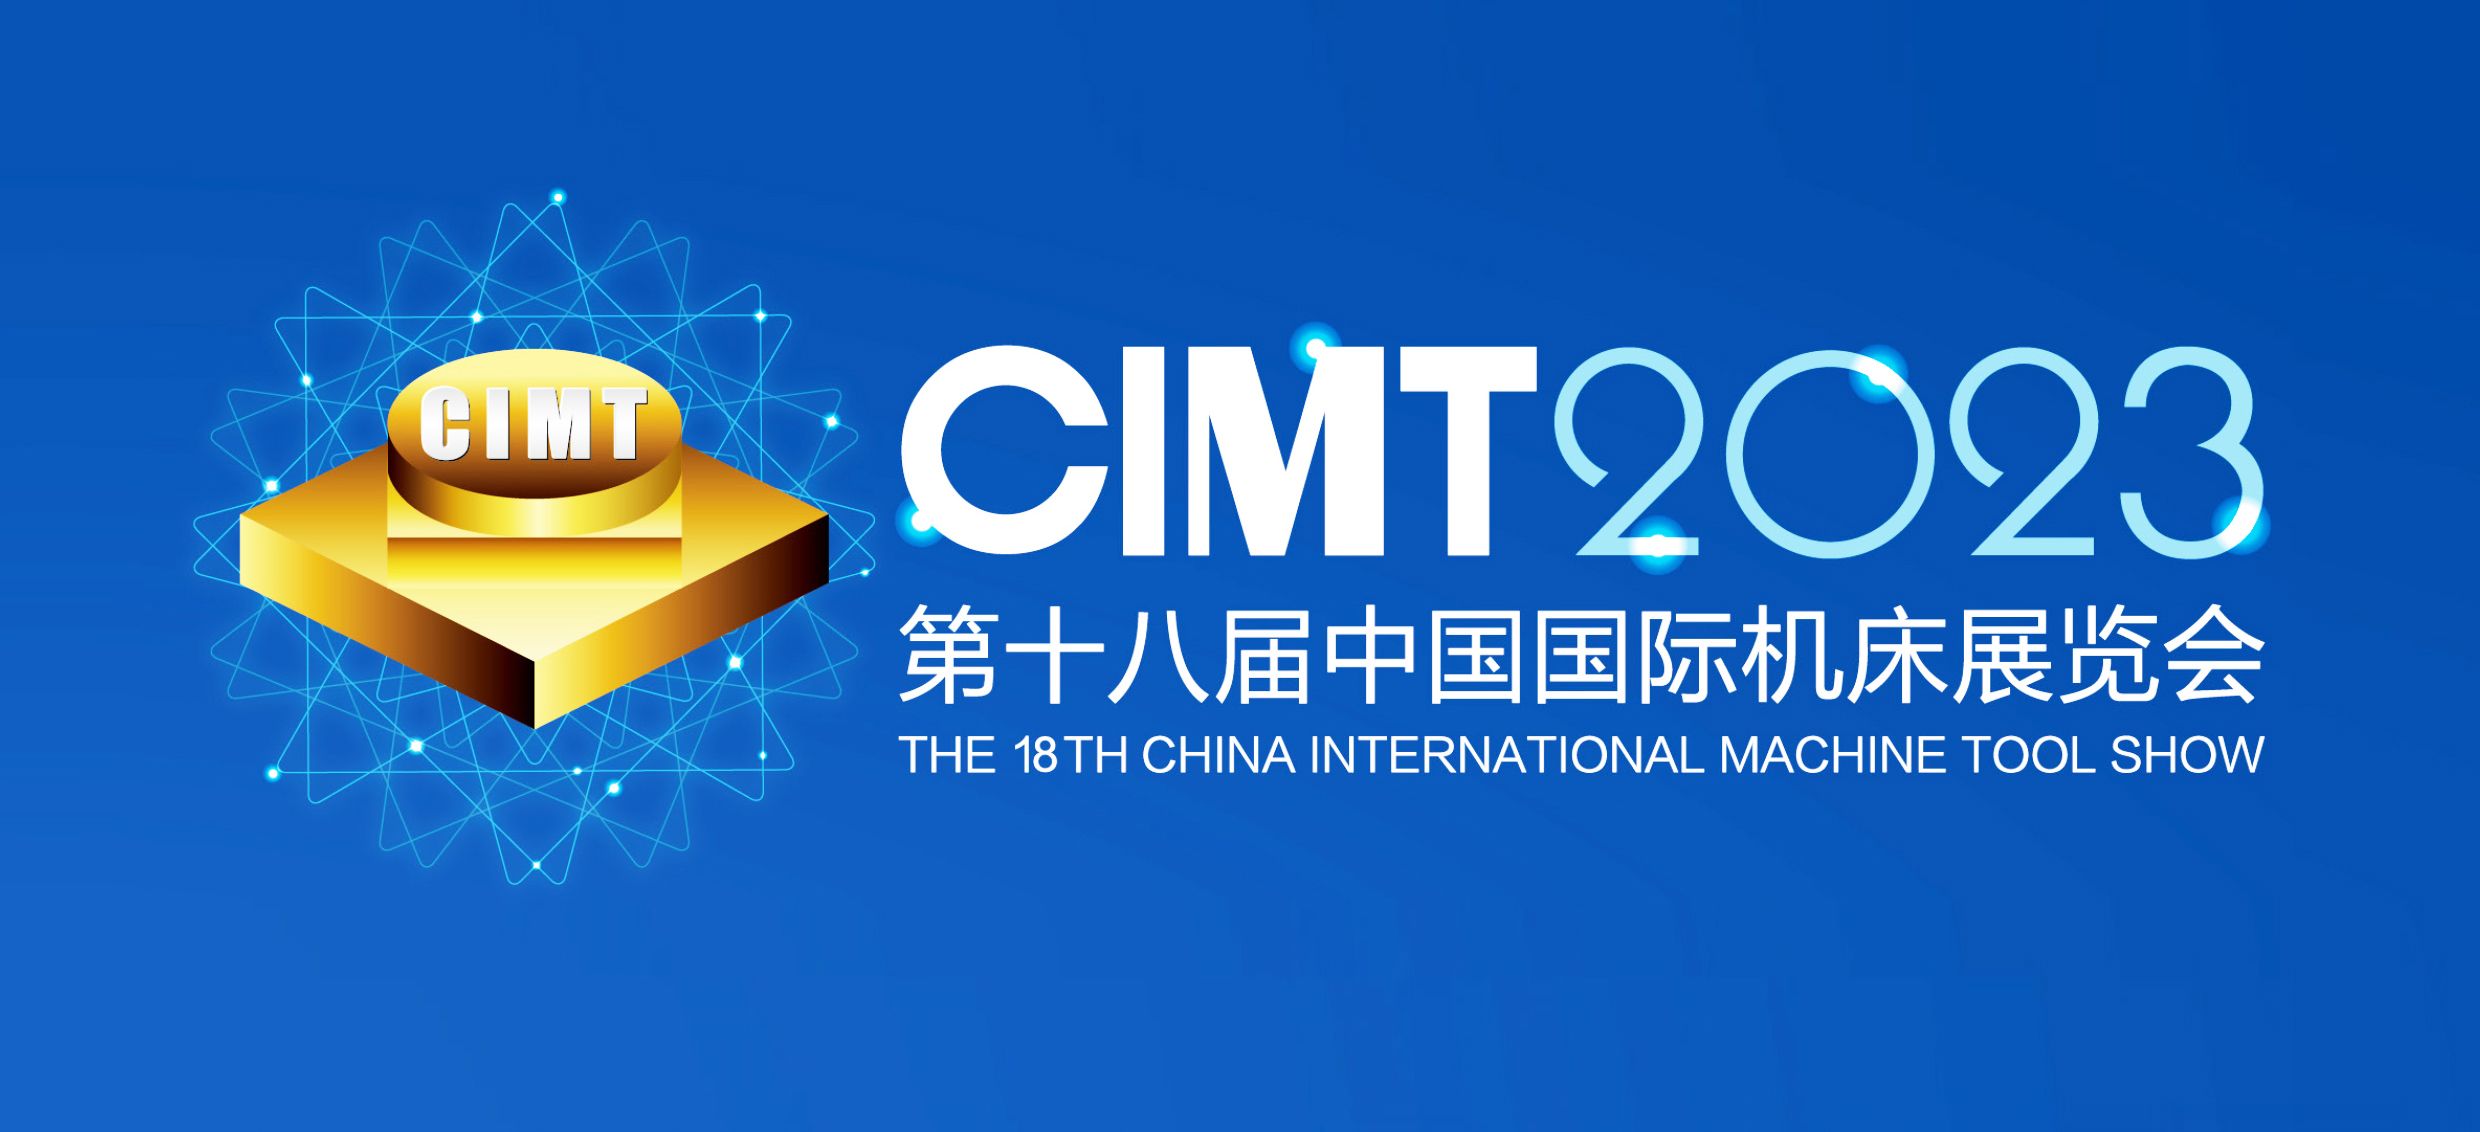 展會邀請|4月10-15第十八屆中國國際機床展覽會通錦精密與您相約北京！